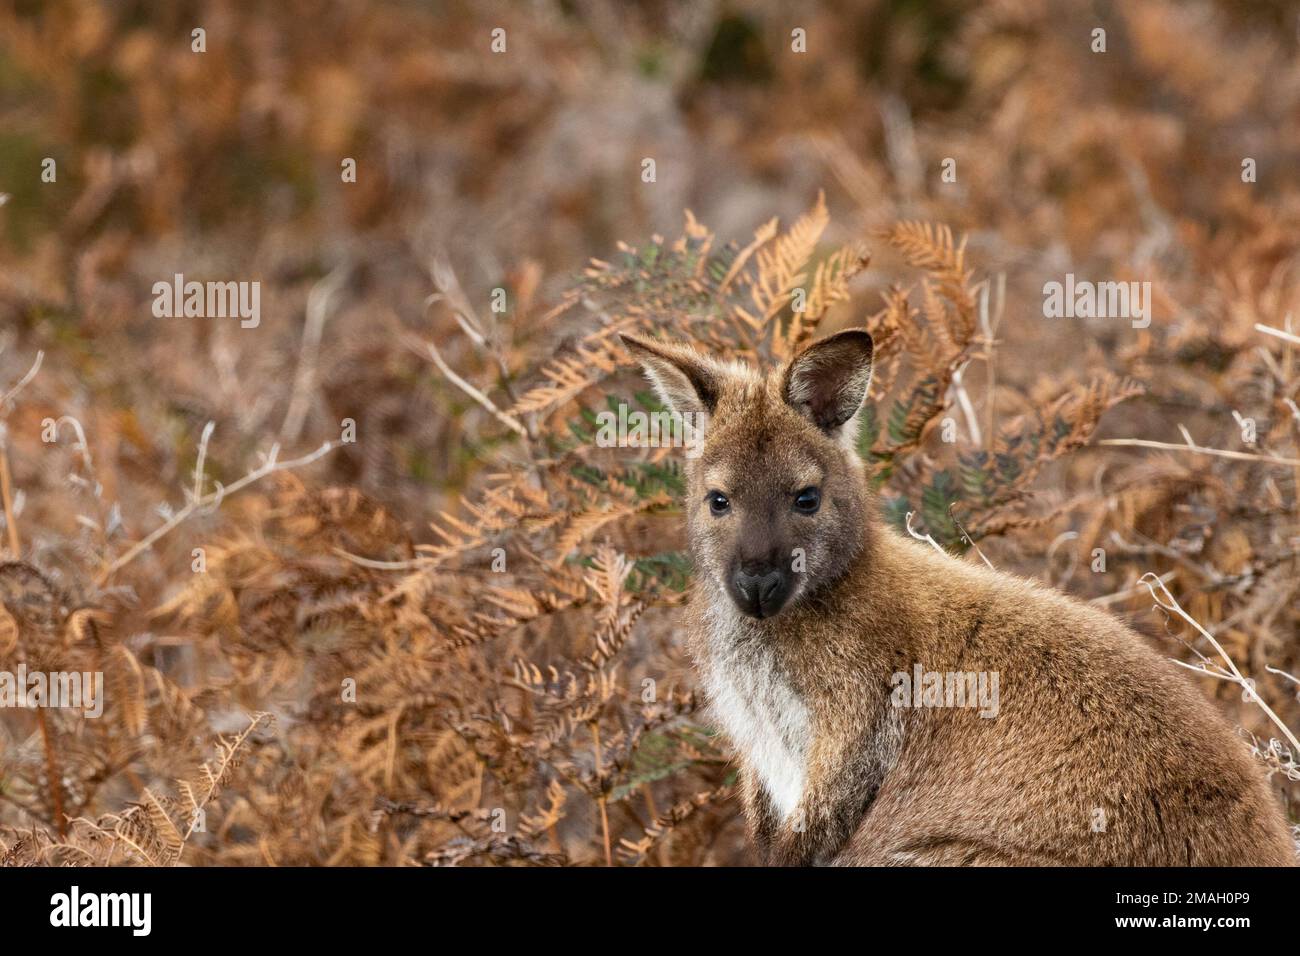 Bella, endemica, wallaby selvaggio si trasforma alerticamente in ambiente naturale del Parco Nazionale di Narawntapu in Tasmania, Austalia Foto Stock